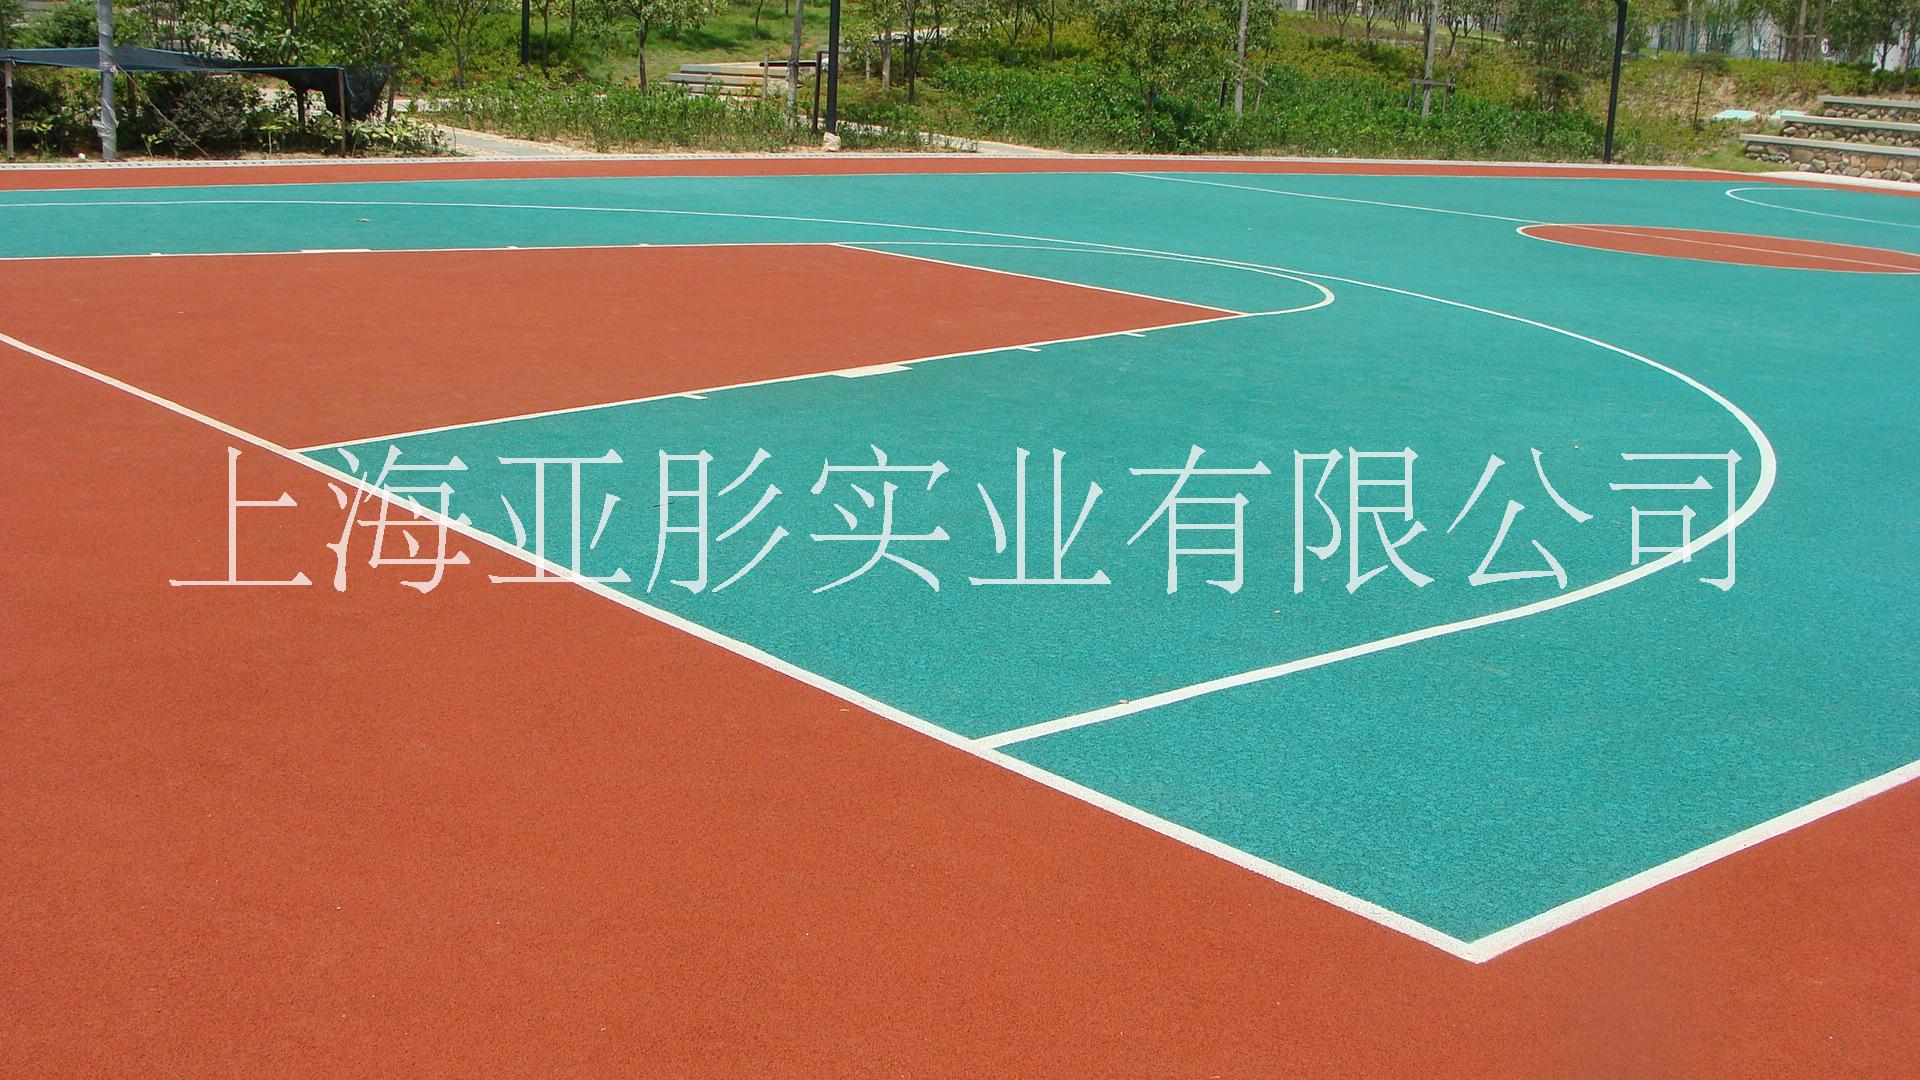 塑胶球场   上海塑胶篮球场批发